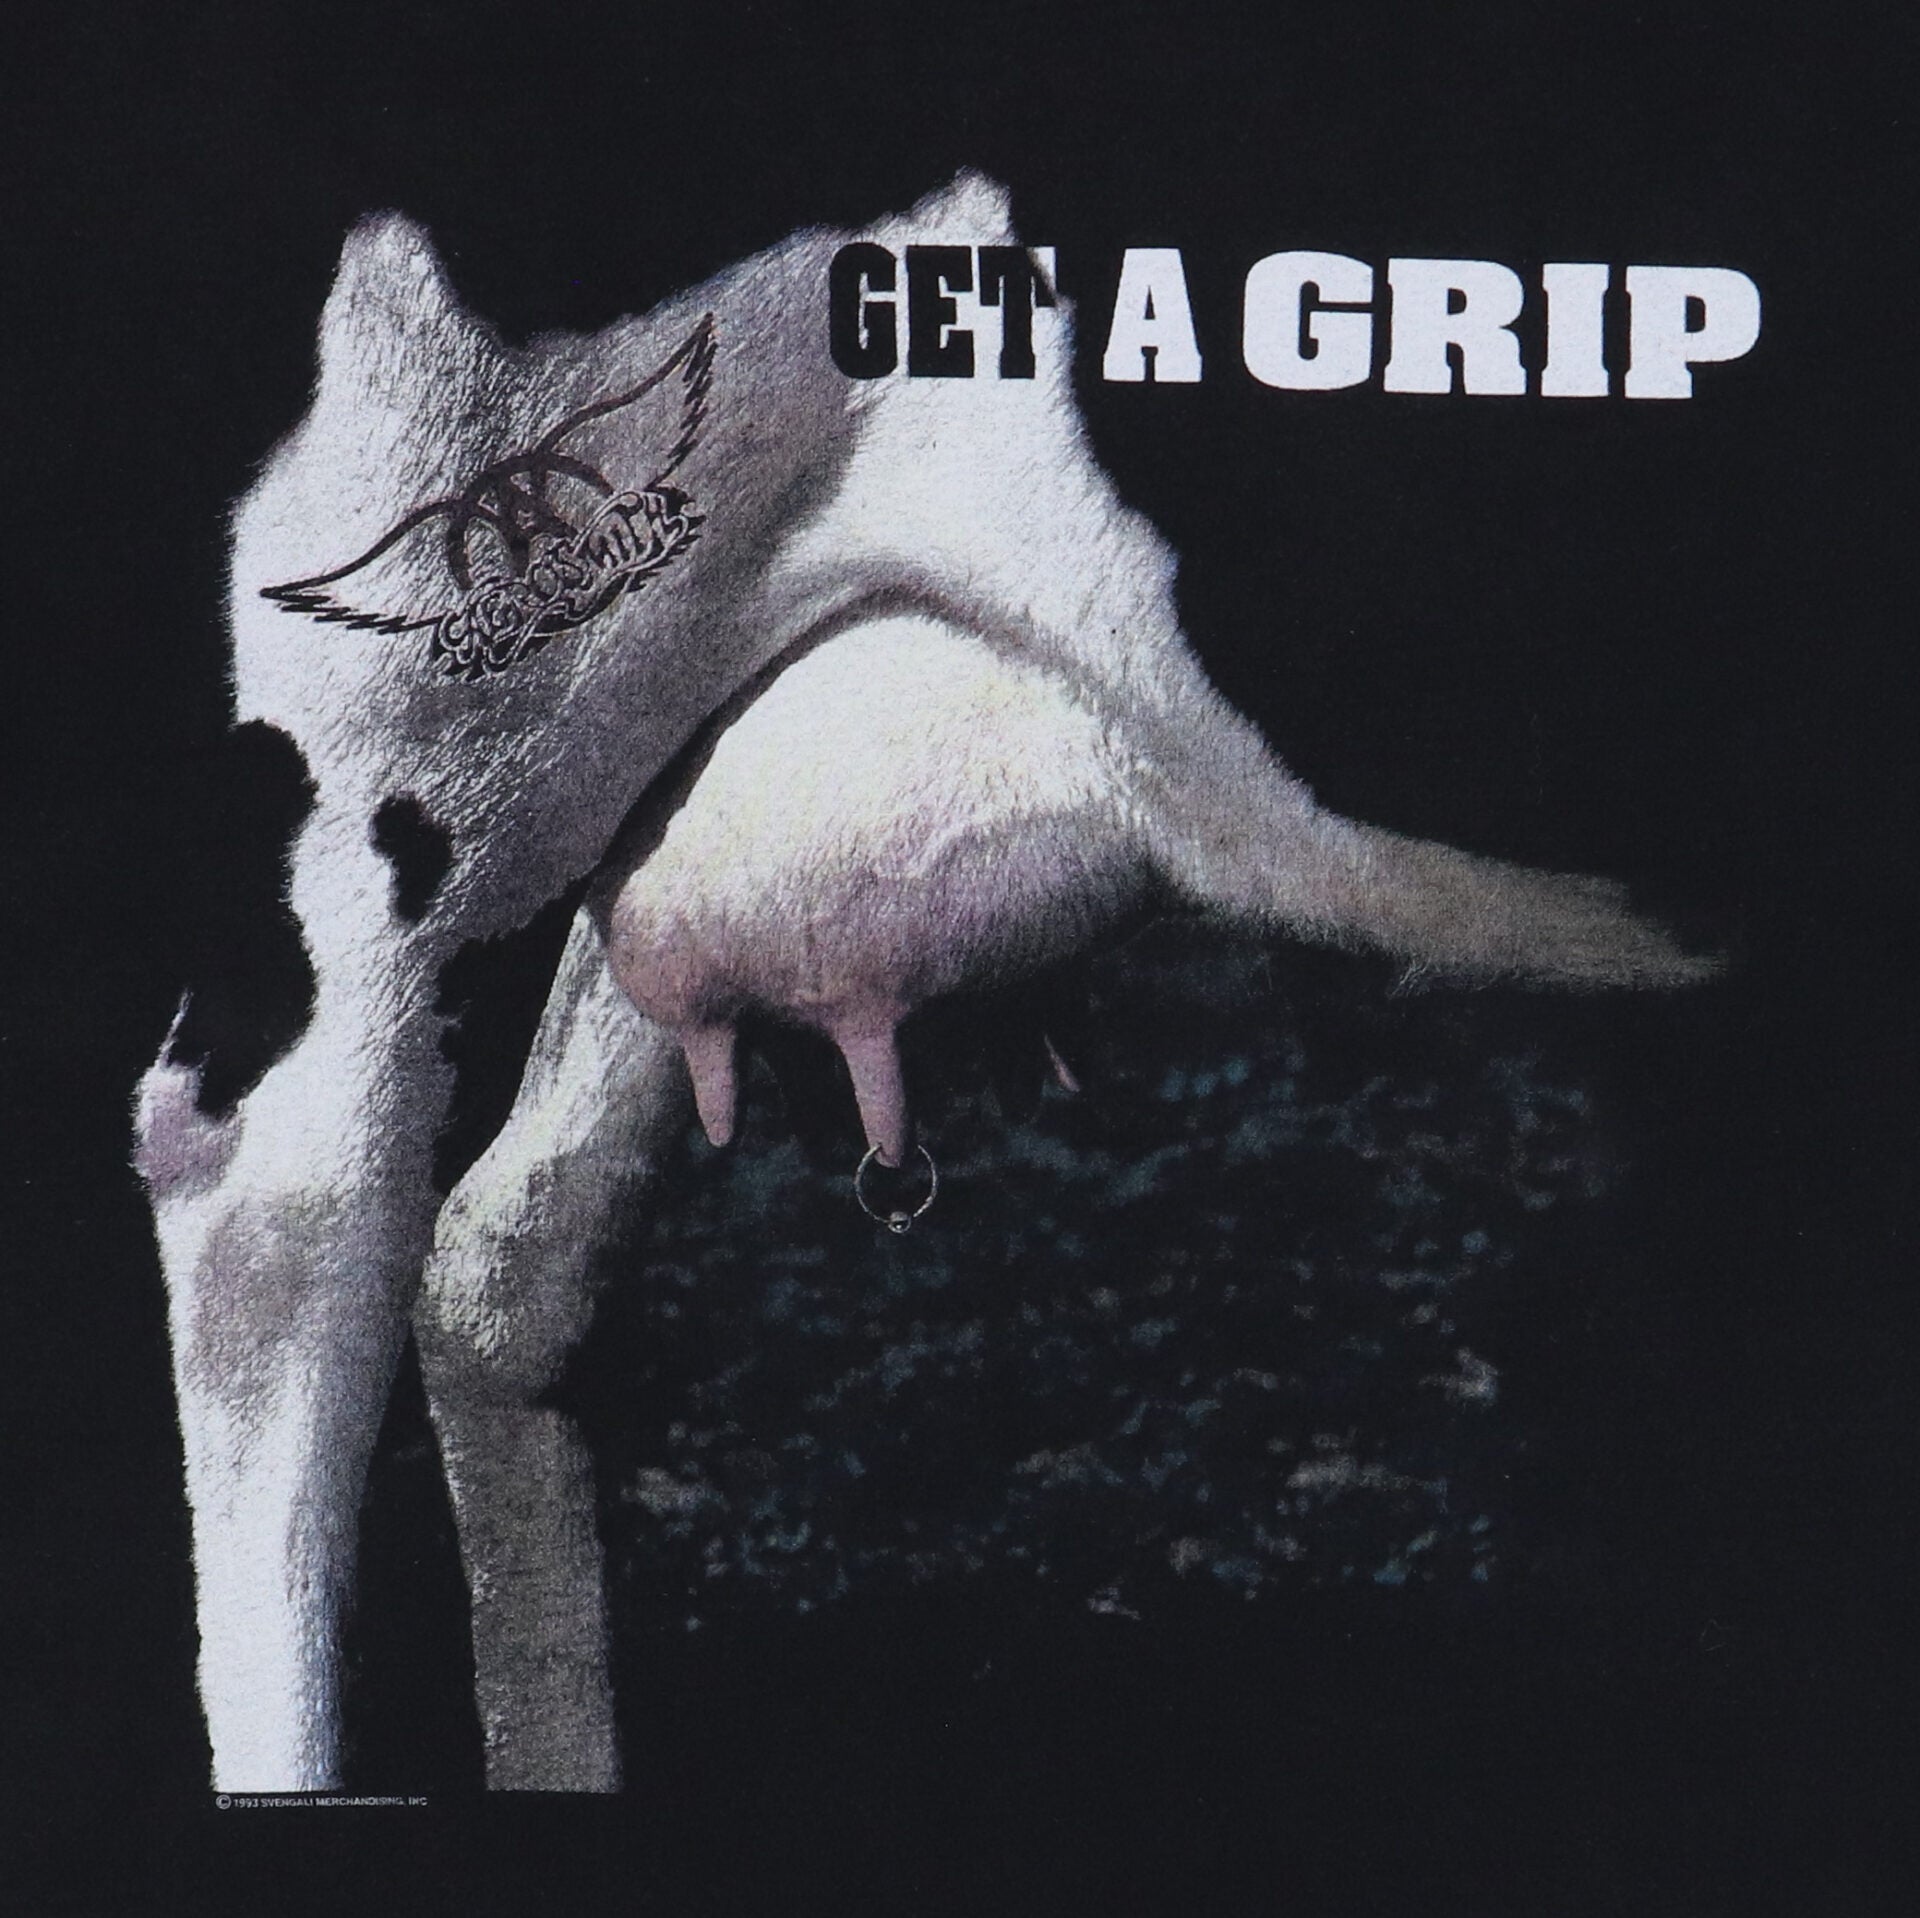 1993 Aerosmith Get A Grip Tour Shirt – WyCo Vintage